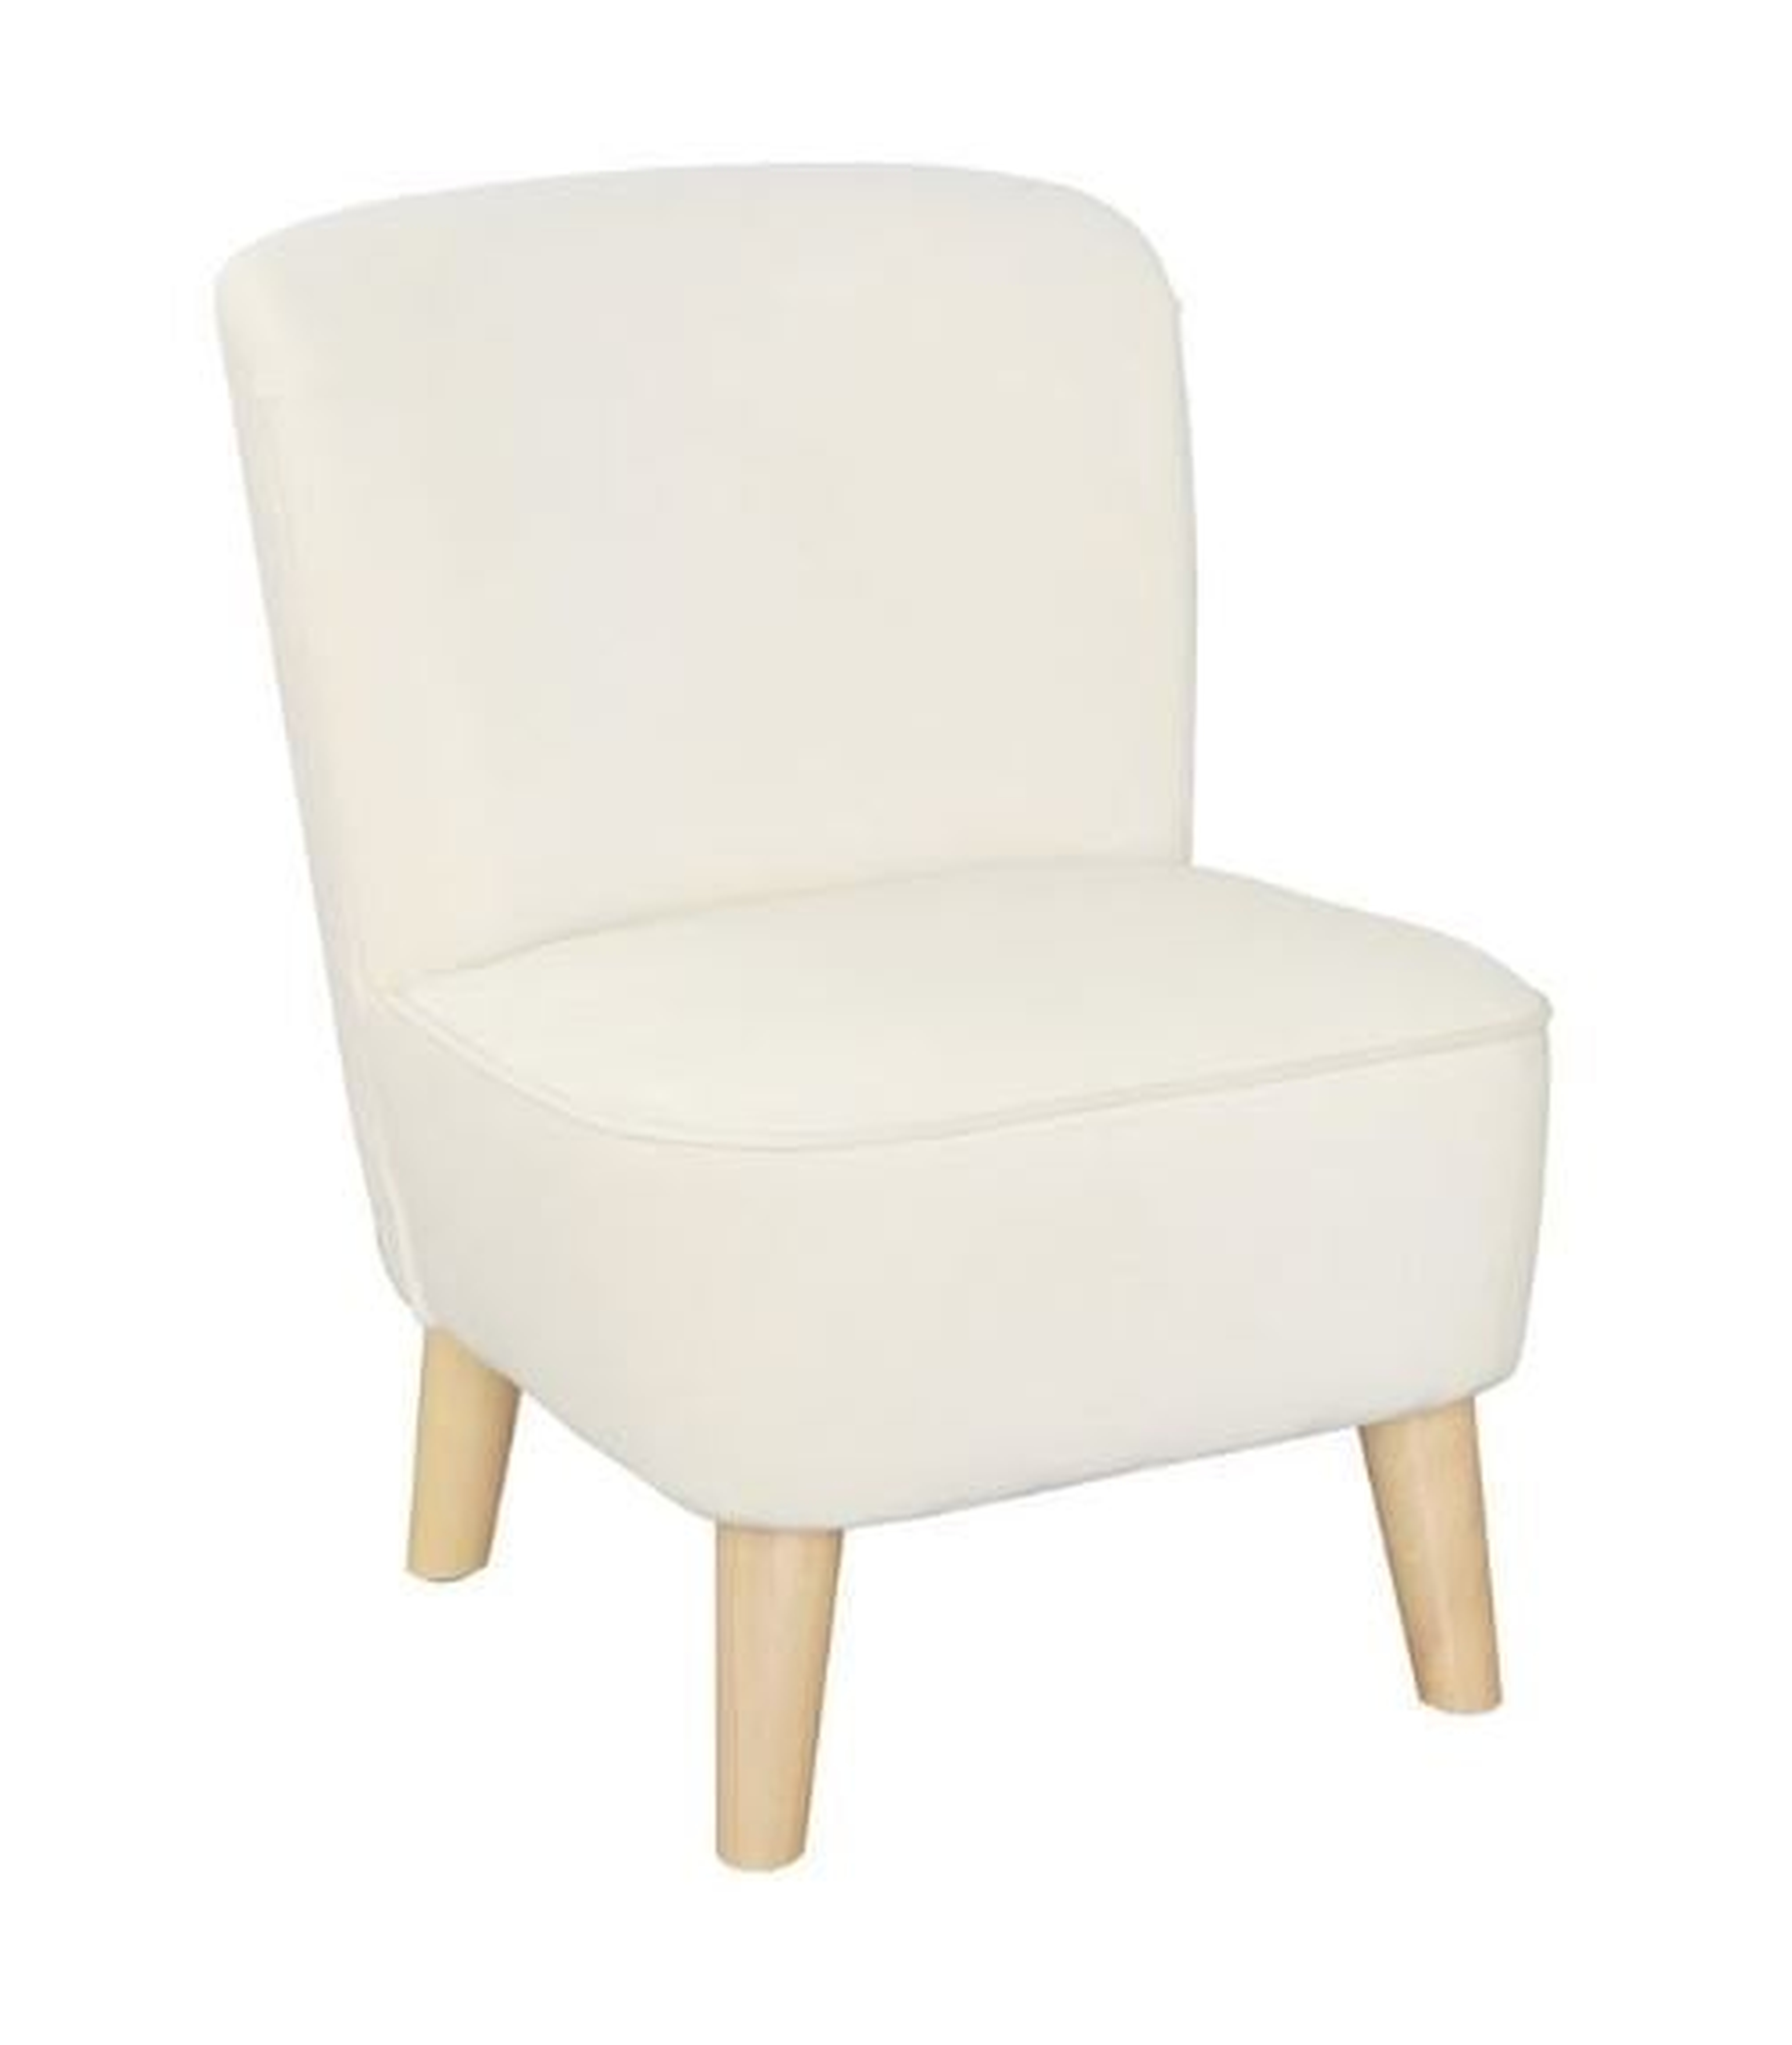 Juni Ultra Comfort Kids Chair - Wayfair